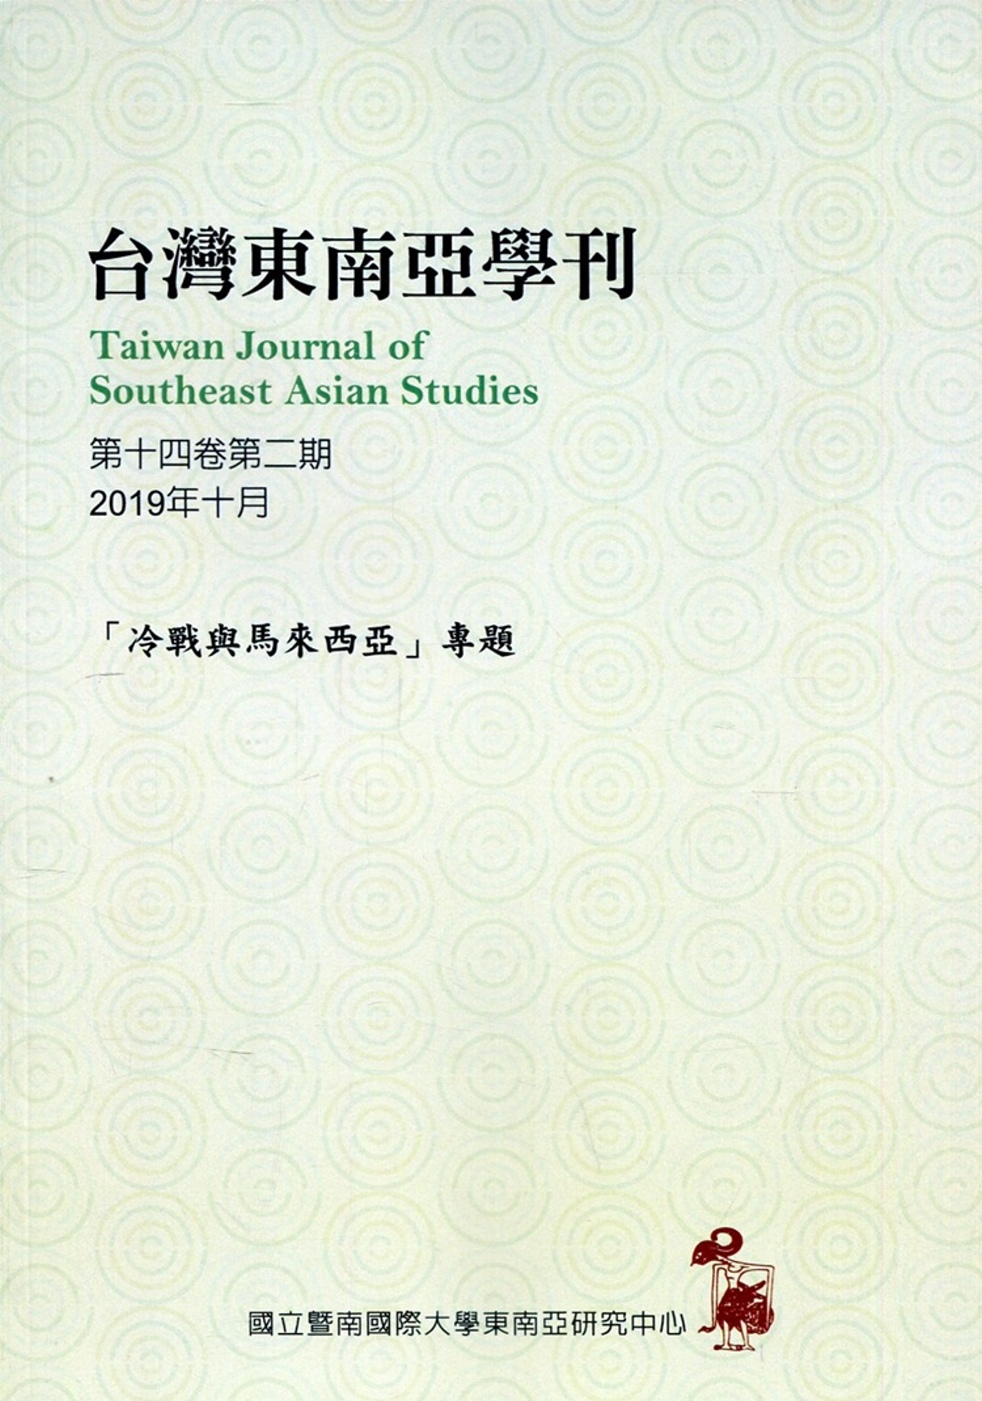 台灣東南亞學刊第14卷2期(2019/10)：「冷戰與馬來西亞」專題